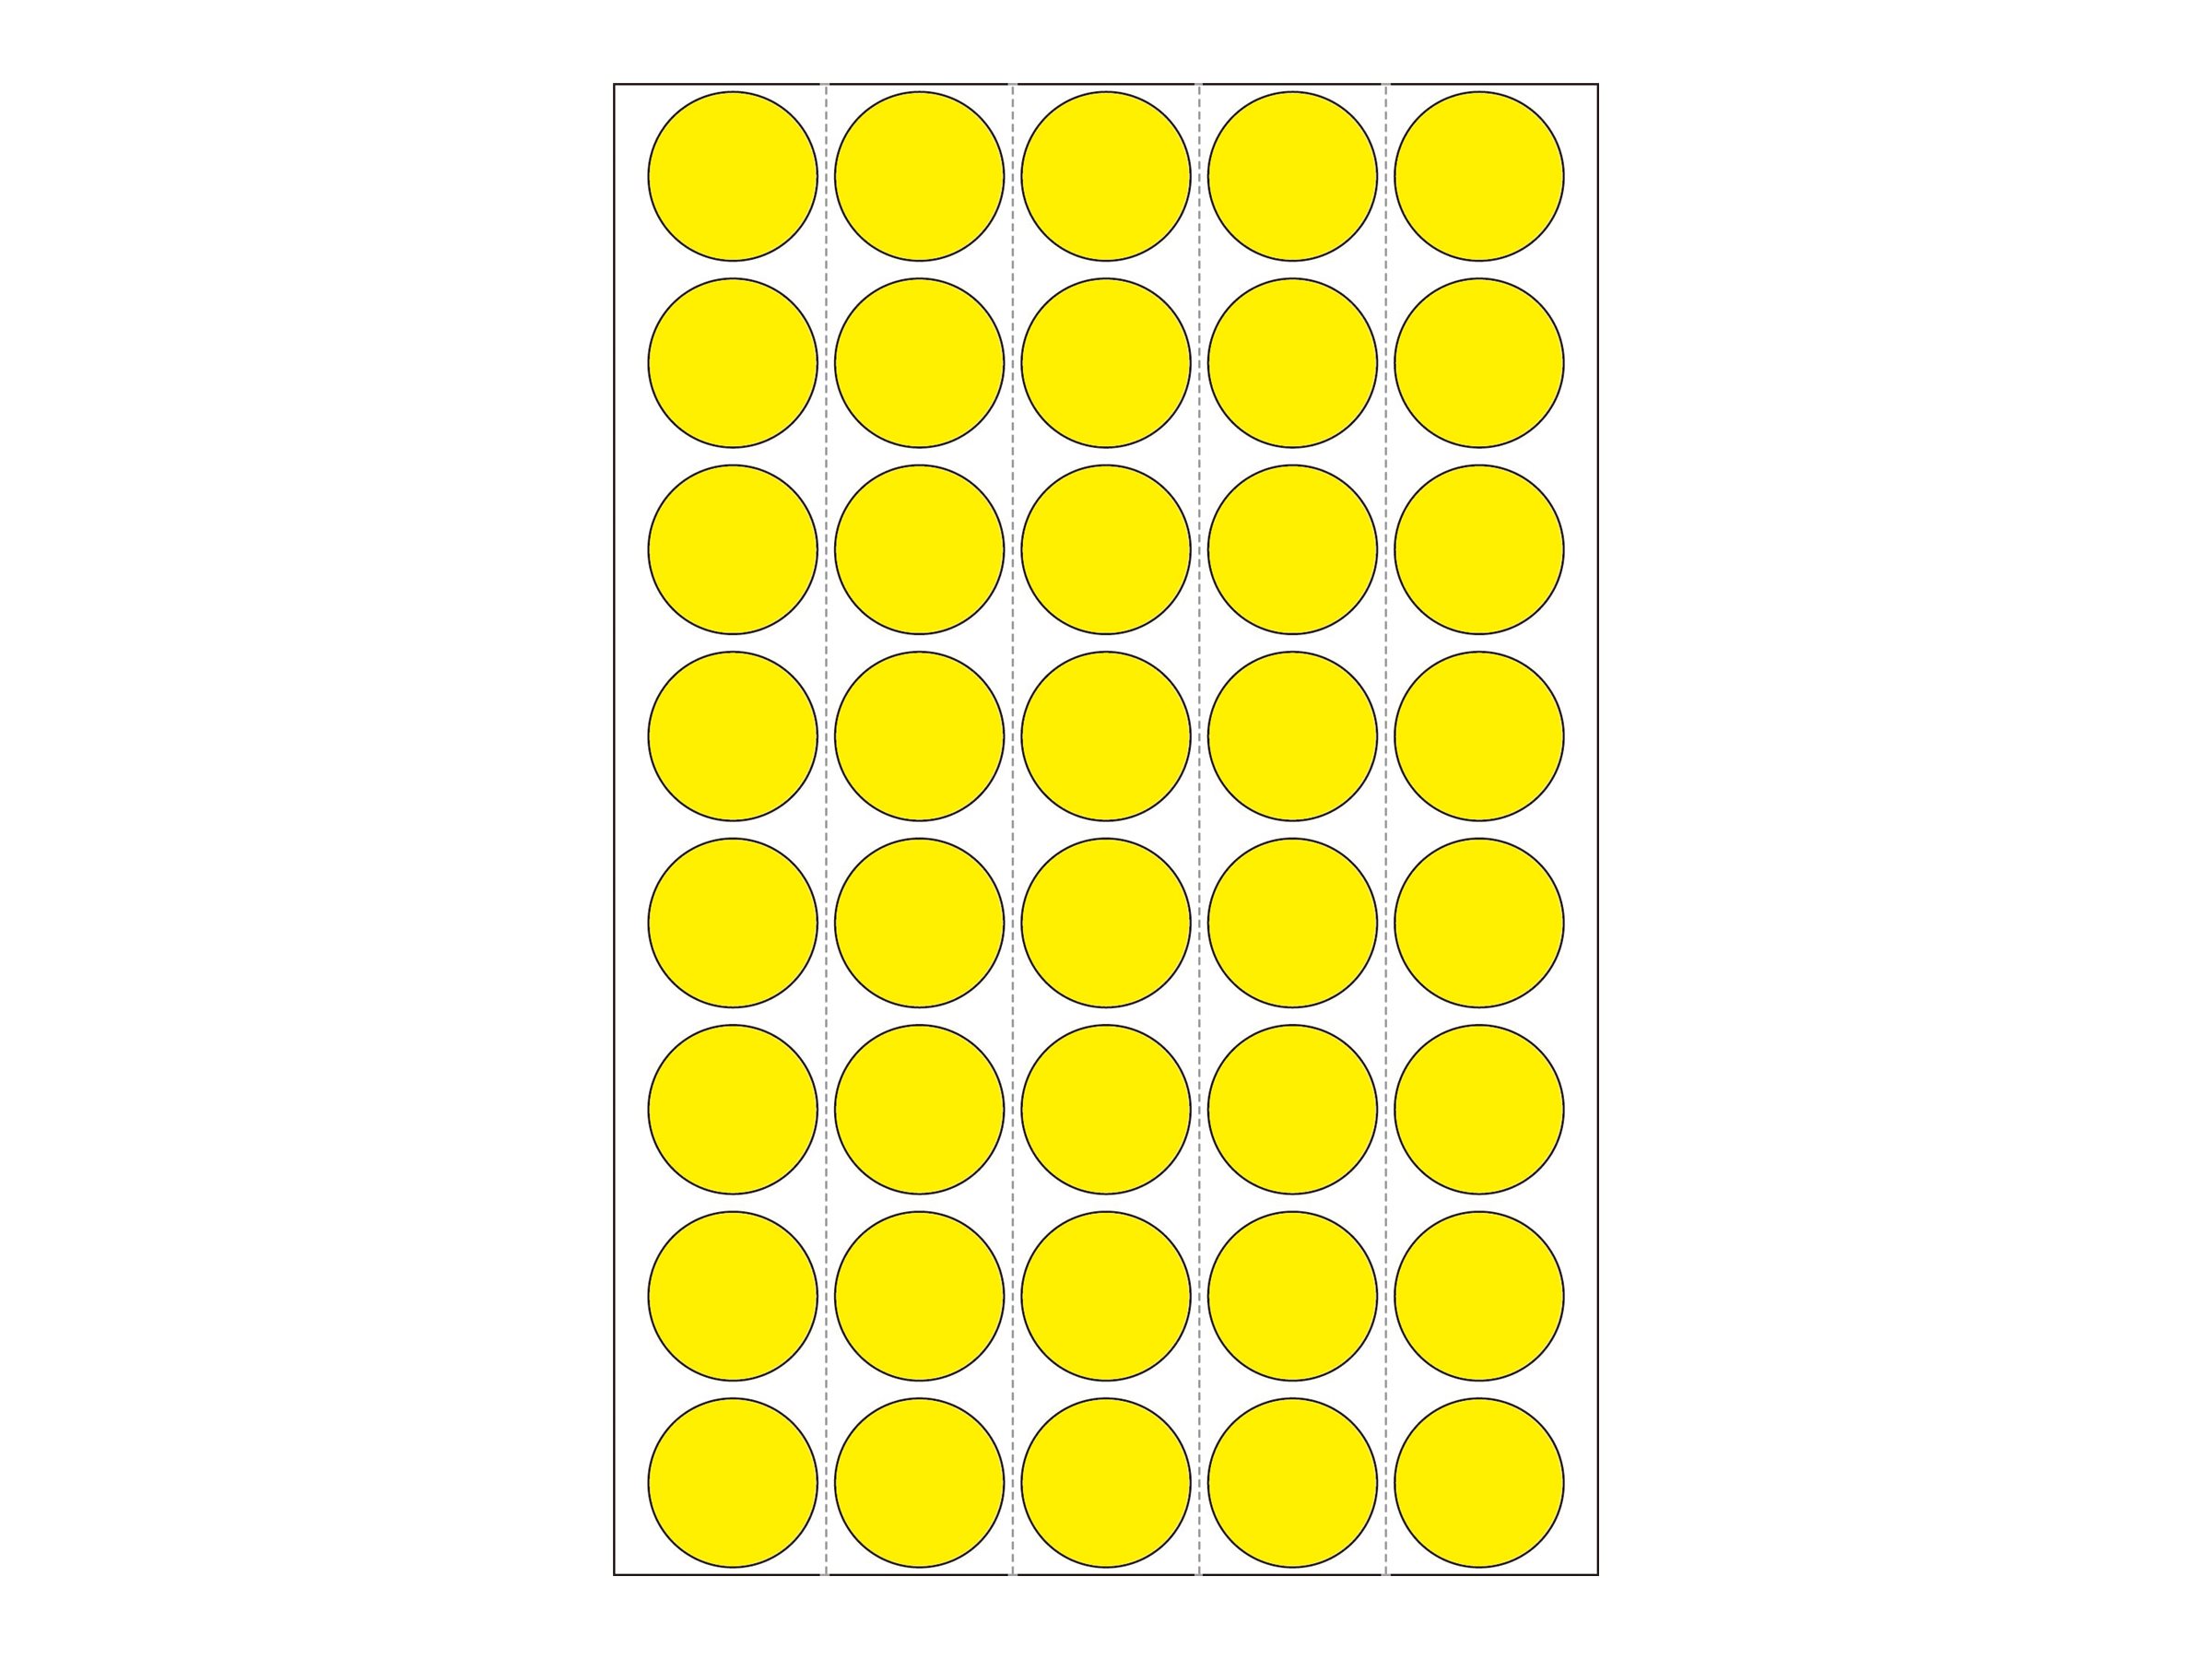 HERMA Papier - matt - permanenter Klebstoff - Gelb - 19 mm rund 1280 Etikett(en) (32 Bogen x 40)